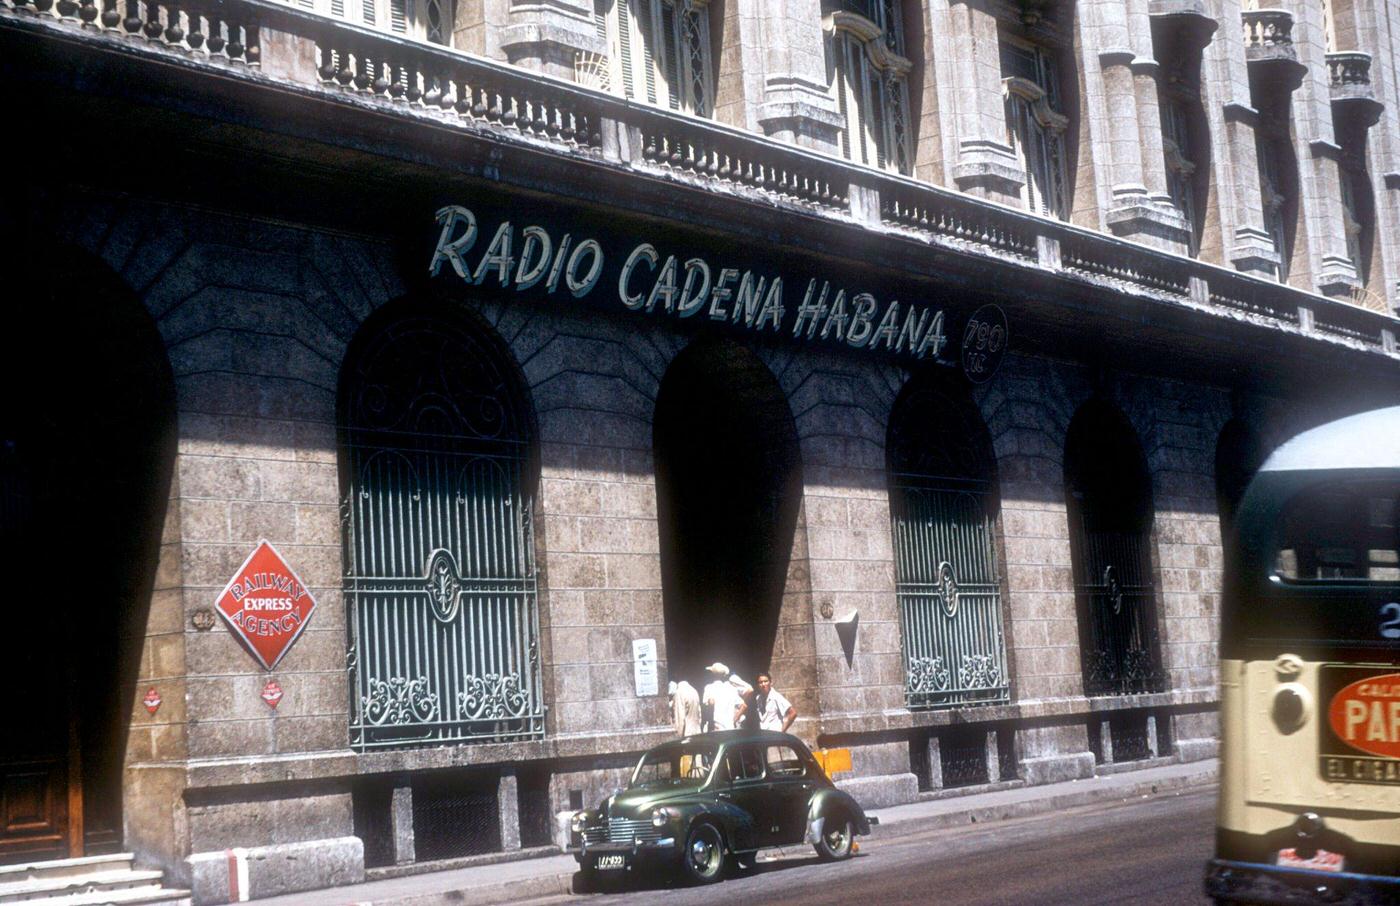 Radio Cadena Habana, Havana, Cuba 1950s